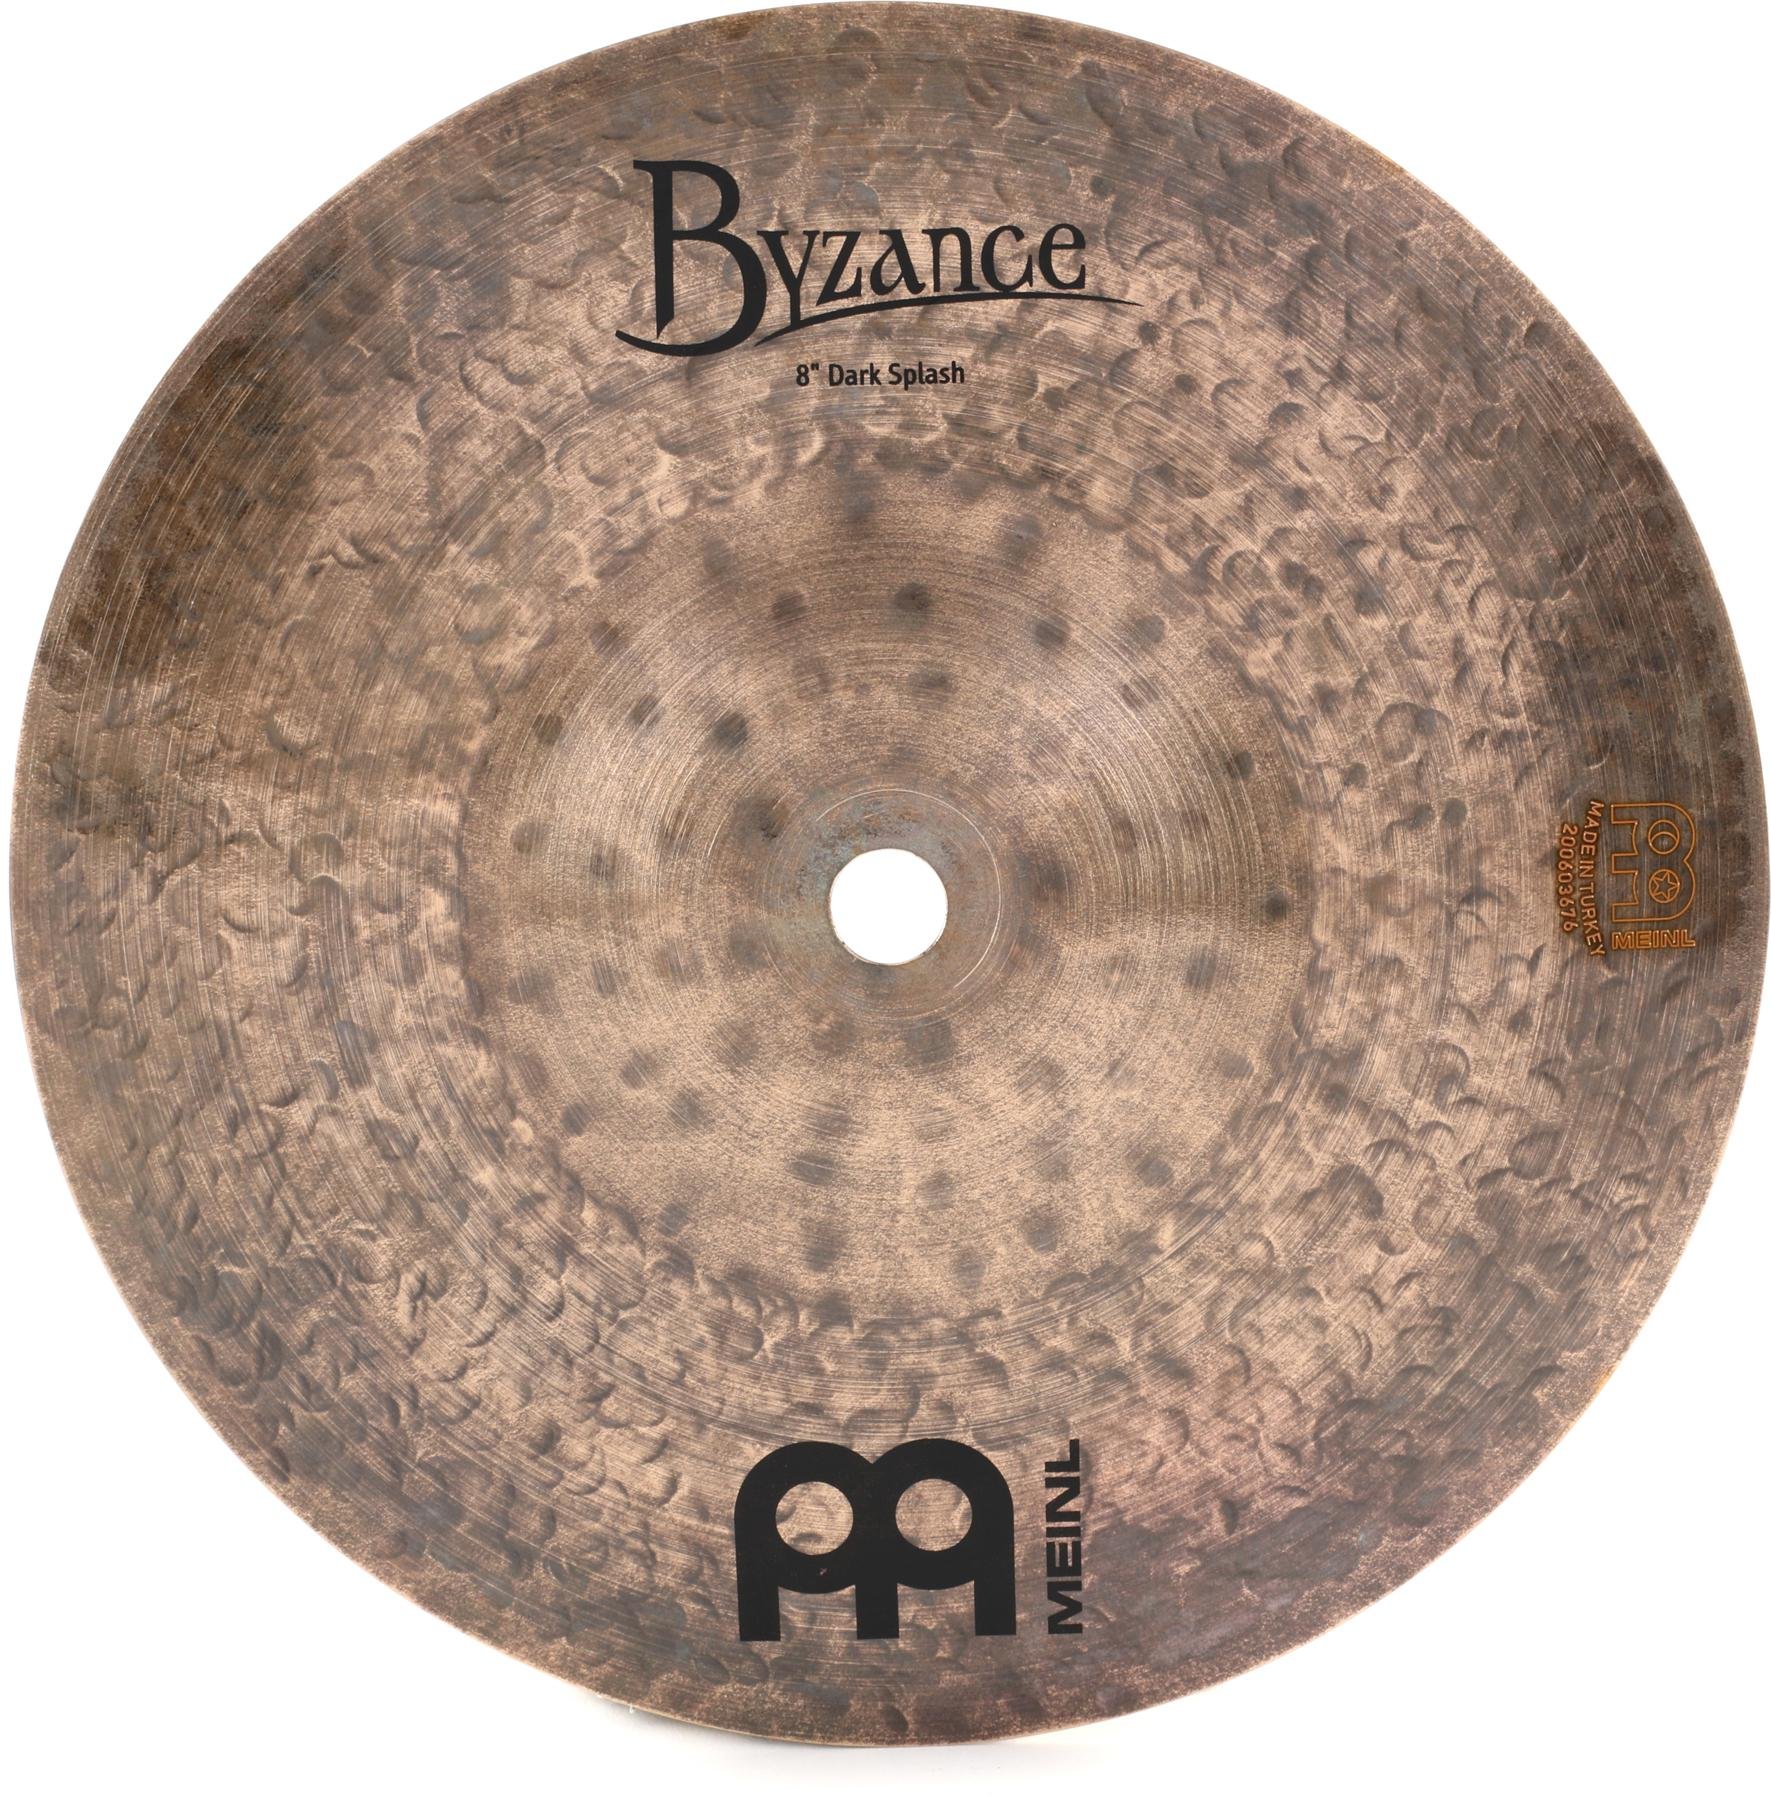 B8DAS Meinl Cymbals Byzance 8 Dark Splash — MADE IN TURKEY — Hand Hammered B20 Bronze 2-YEAR WARRANTY